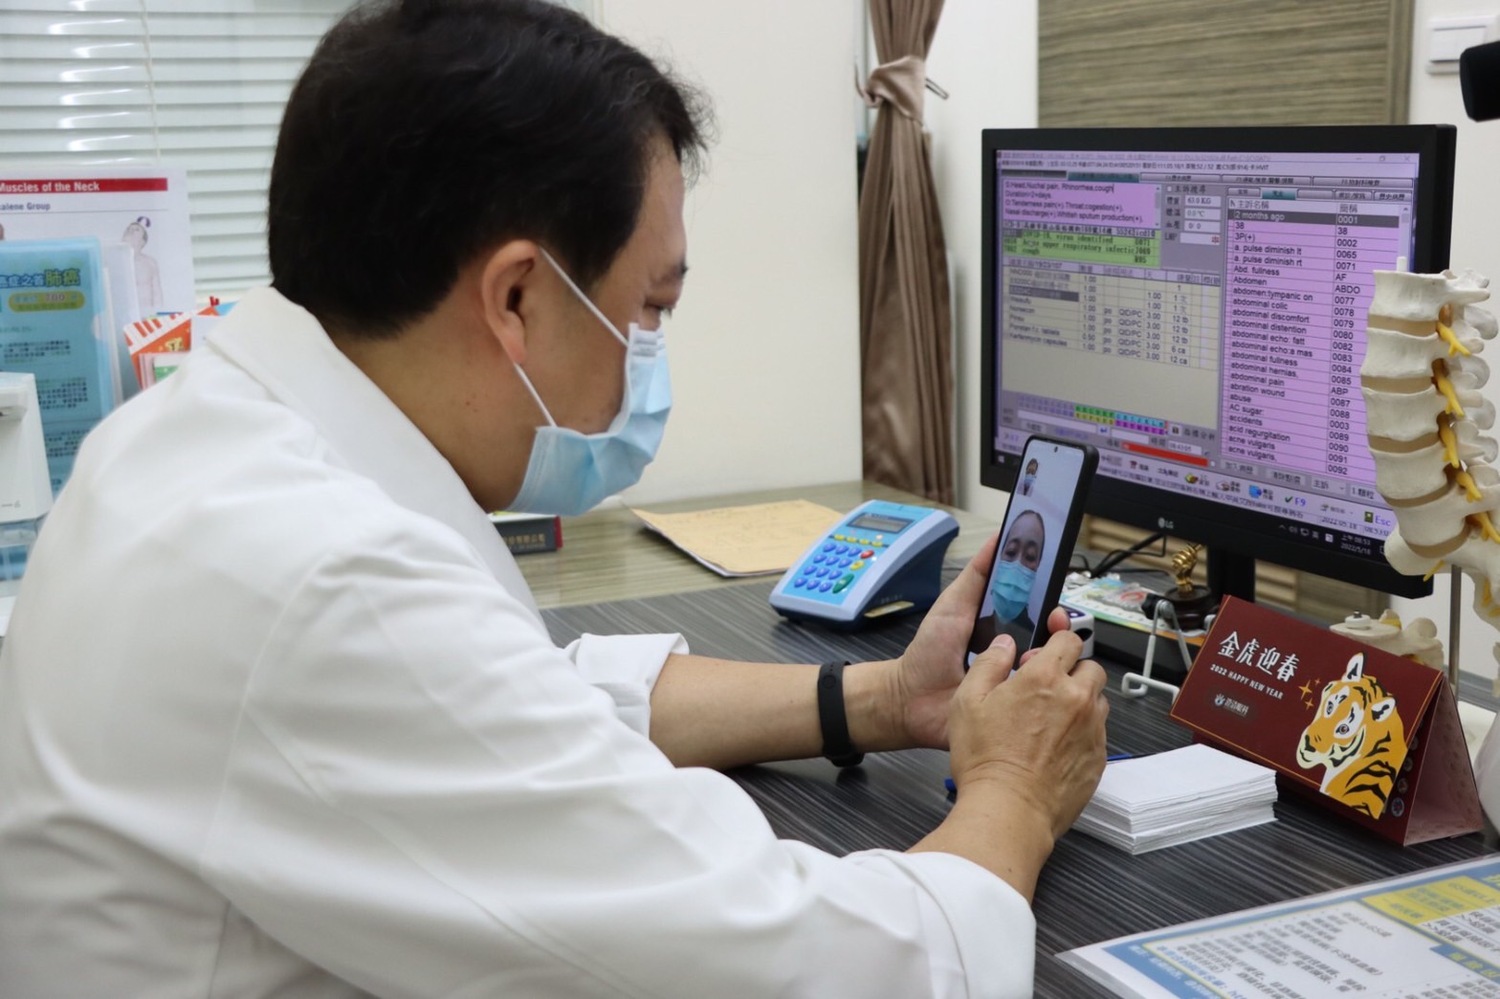 台灣健保與對抗COVID-19疫情之經驗獲得國際肯定，健保署與國際知名出版社Springer Nature合作合作出版談論台灣健保、對抗COVID-19疫情之經驗等英文專書「Digital Health Care in Taiwan- Innovations of National Health Insurance」(台灣數位健康照護)，電子書已於111年8月15日線上發行。(圖為醫生視訊看診。)   圖：高雄市衛生局提供